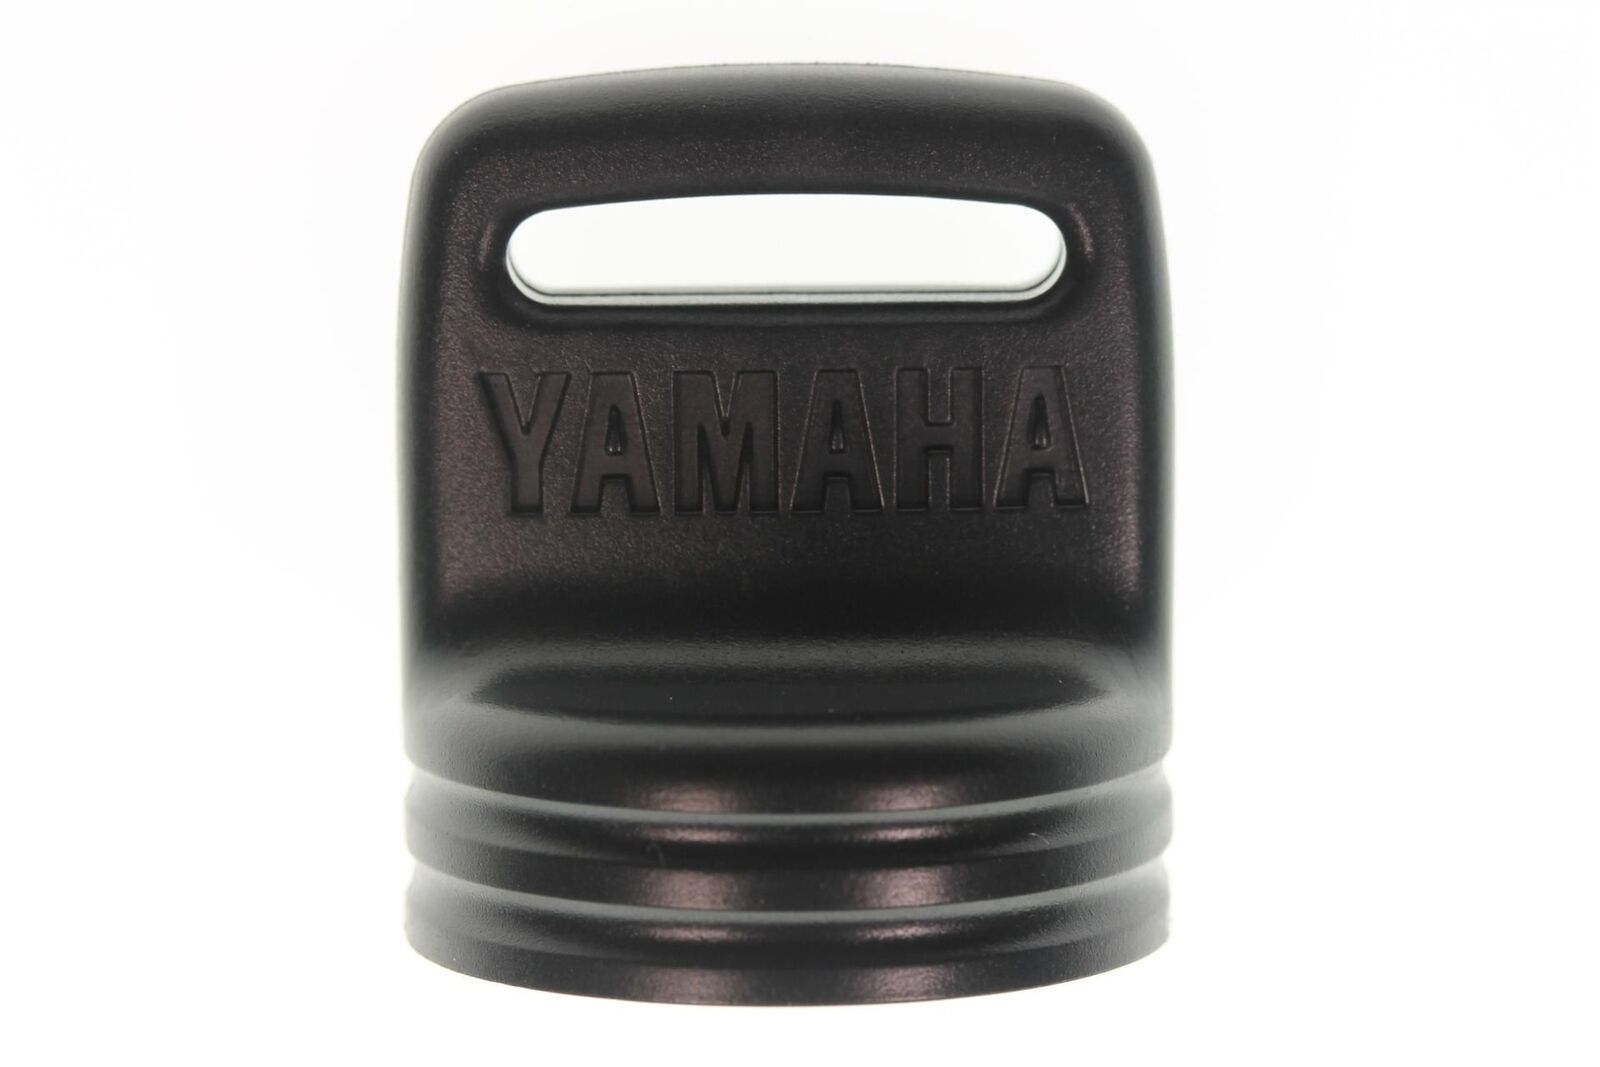 Yamaha 300/700 Key Cover 703-82577-00-00 OEM NEW